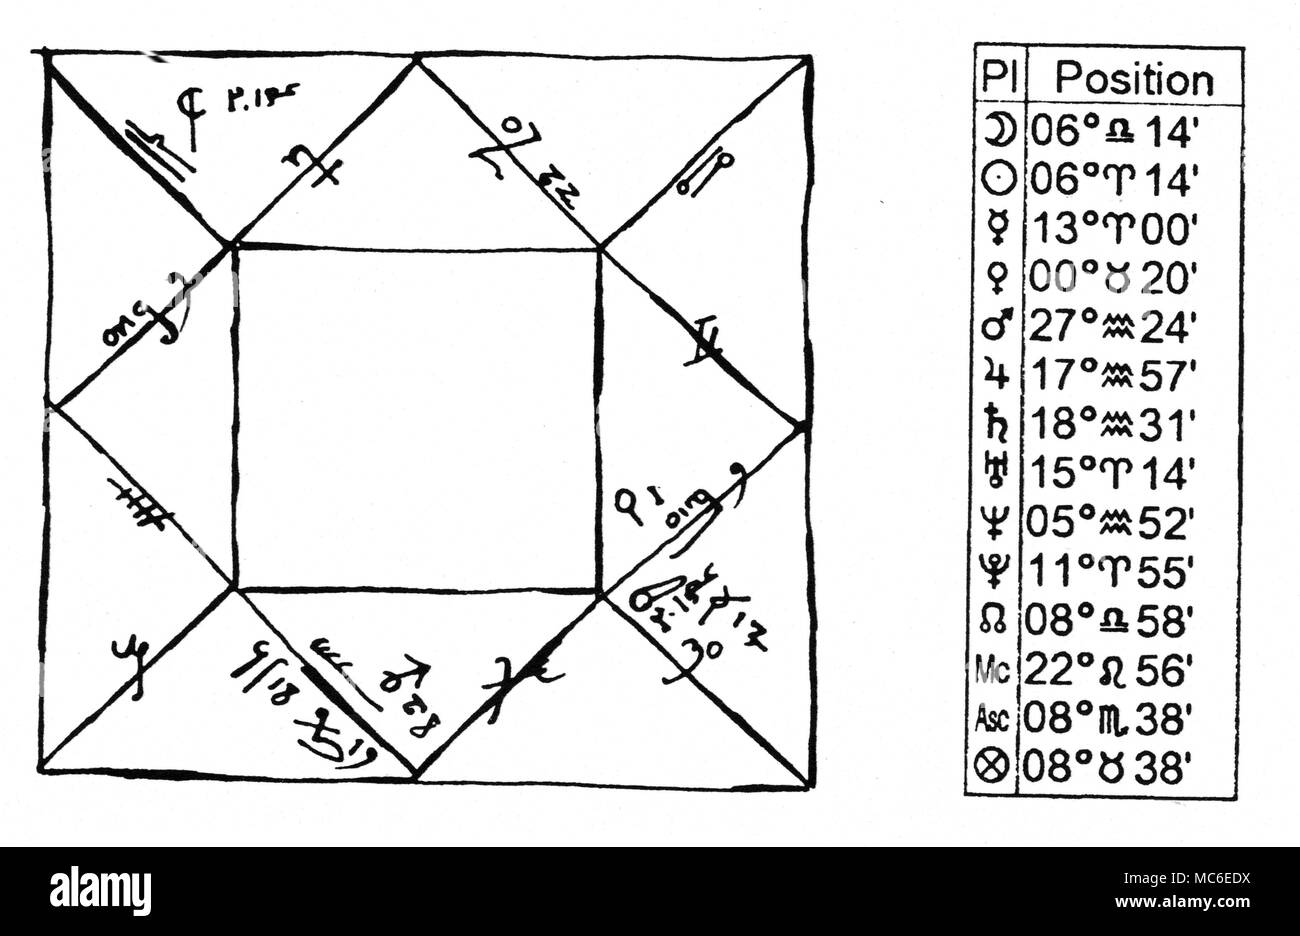 Astrologia - oroscopo di eclipse un oroscopo grafico, espressi per il Lunar Eclipse del 18 marzo 1345, detto da alcuni astrologi per contrassegnare l'inizio della Morte Nera di quell'anno. Il grafico fa uso di sigils astrologici che sono ormai defunta: Ascendente è in 08.38 Scorpione e la Luna (in alto a sinistra) è in 06.14 Libra. Un moderno equivalente tabulato, dato nei moderni sigils, viene stampato a fianco per facilitare l'identificazione di sigils. Il grafico è da D. Ovason, il libro di Eclipse, 1999. Foto Stock